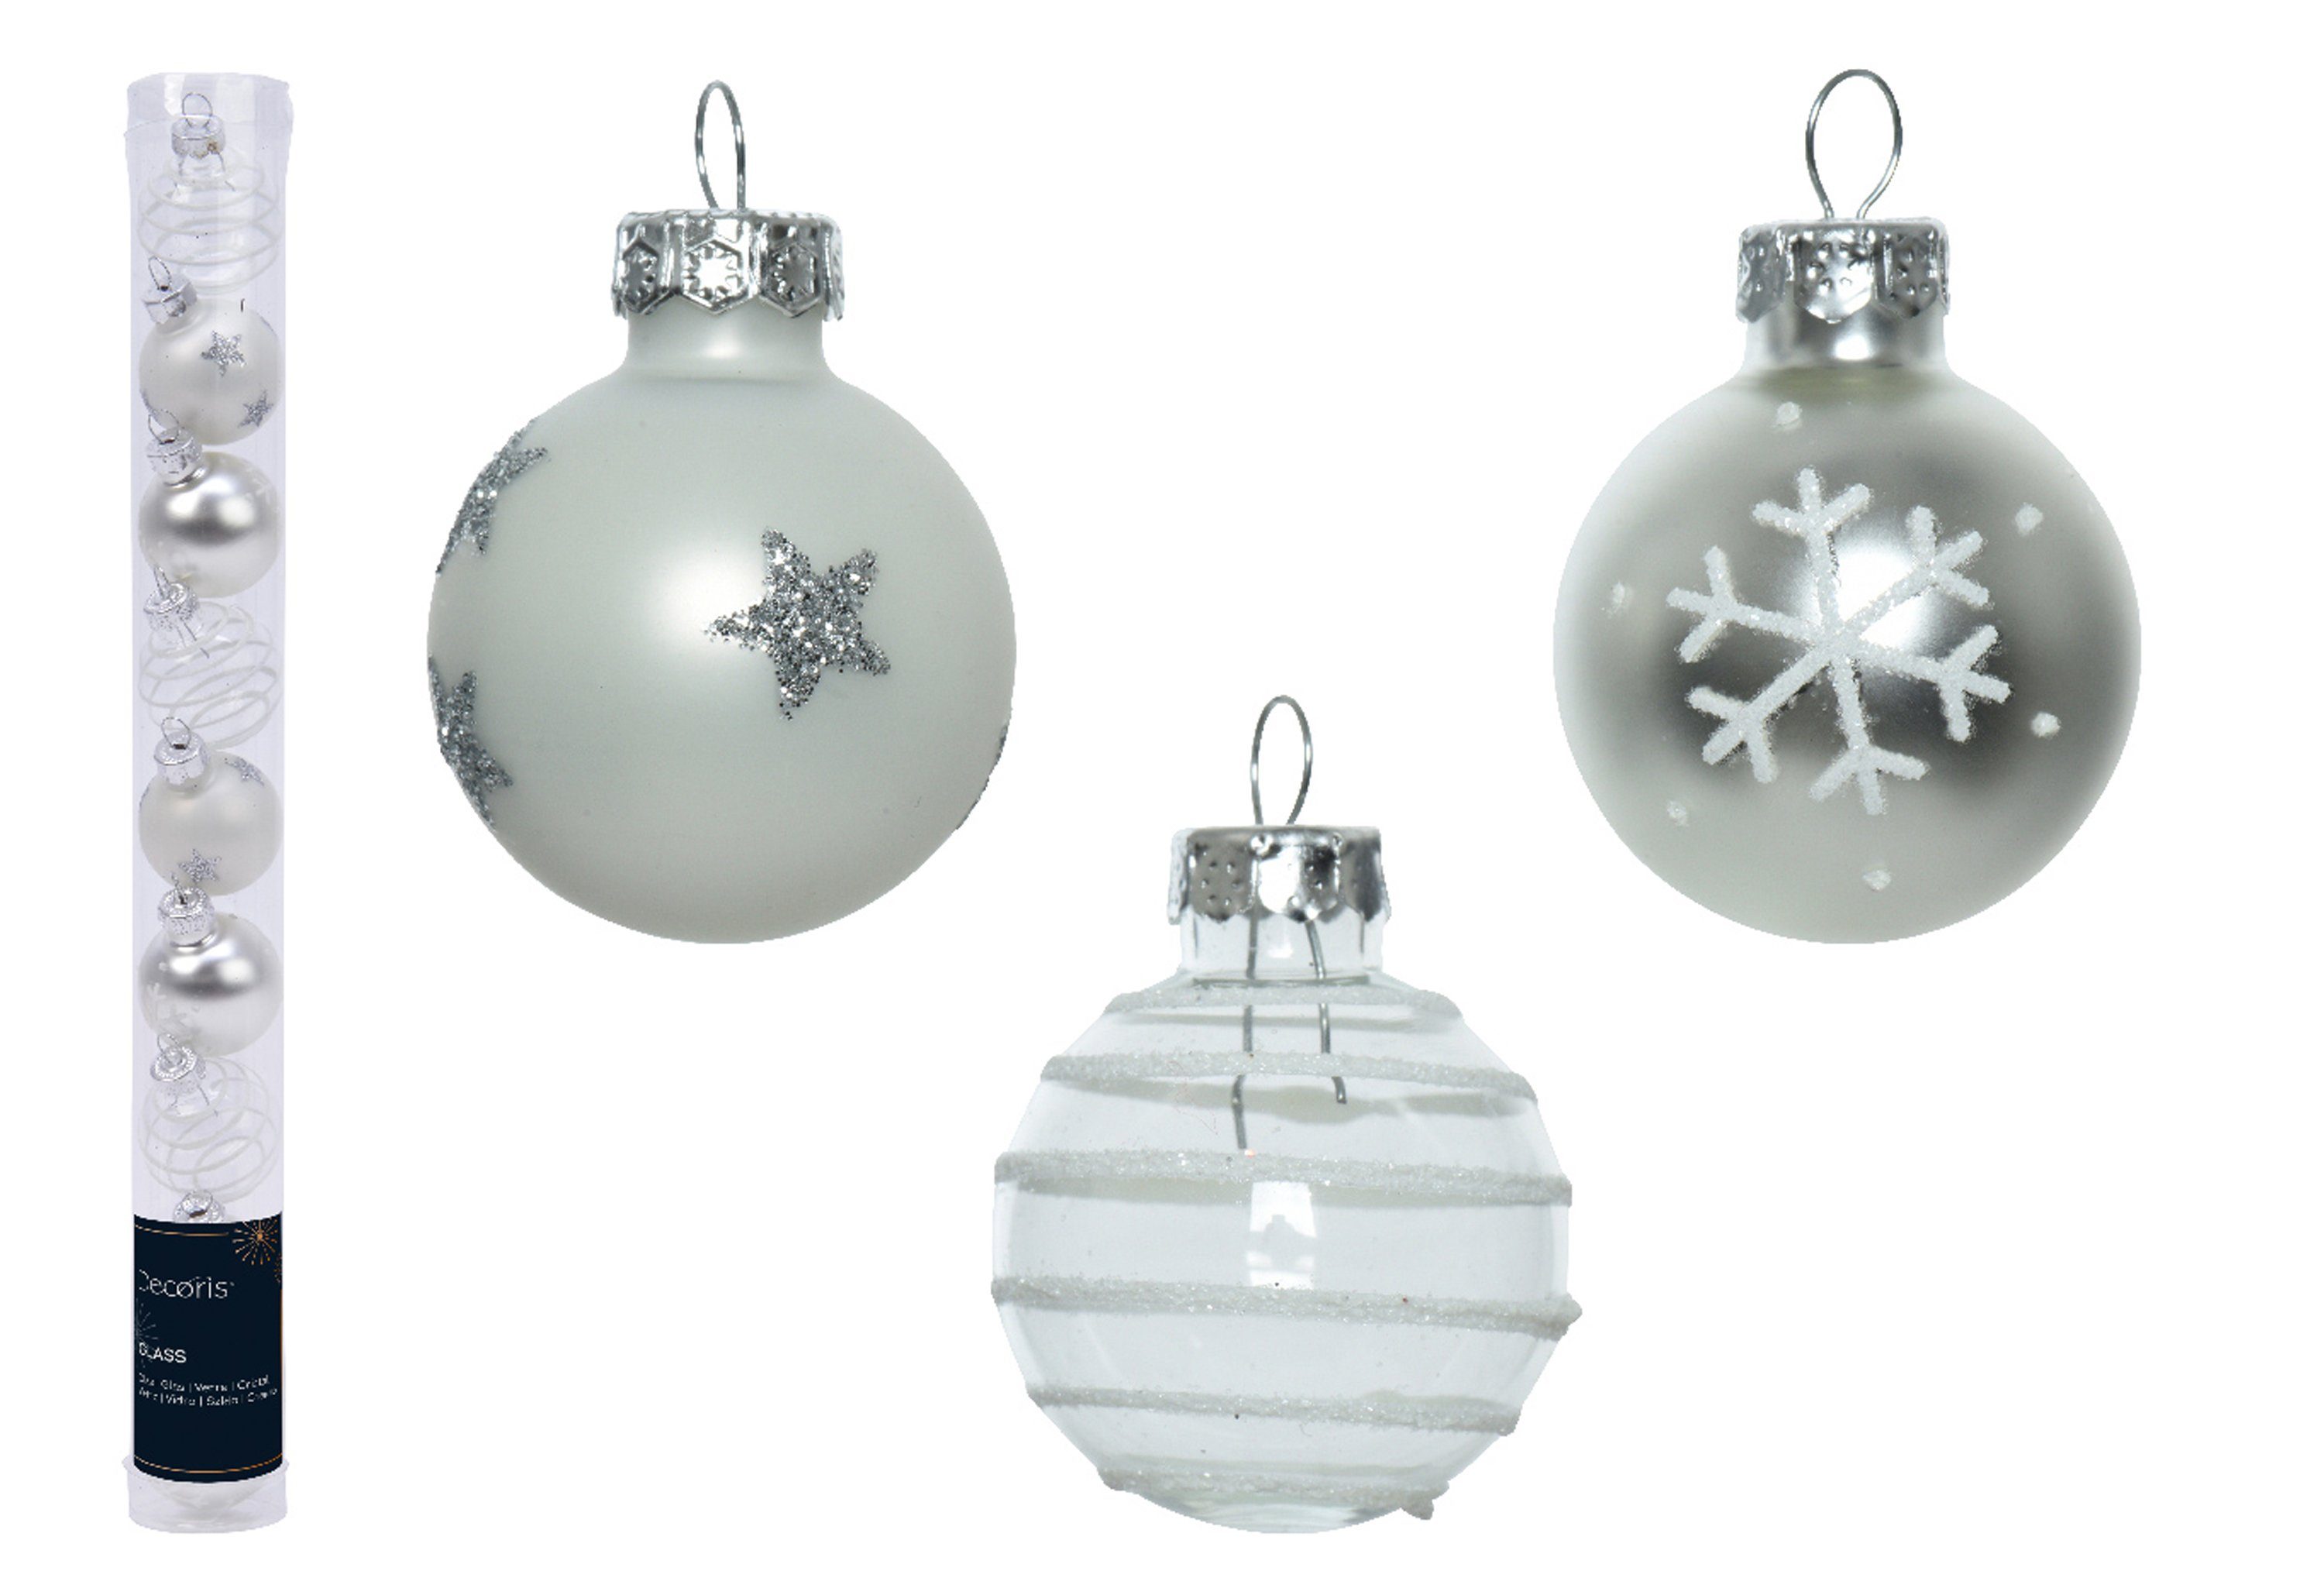 Decoris season decorations Weihnachtsbaumkugel, Weihnachtskugeln Glas mit Motiven 3cm silber Mix, 9er Set